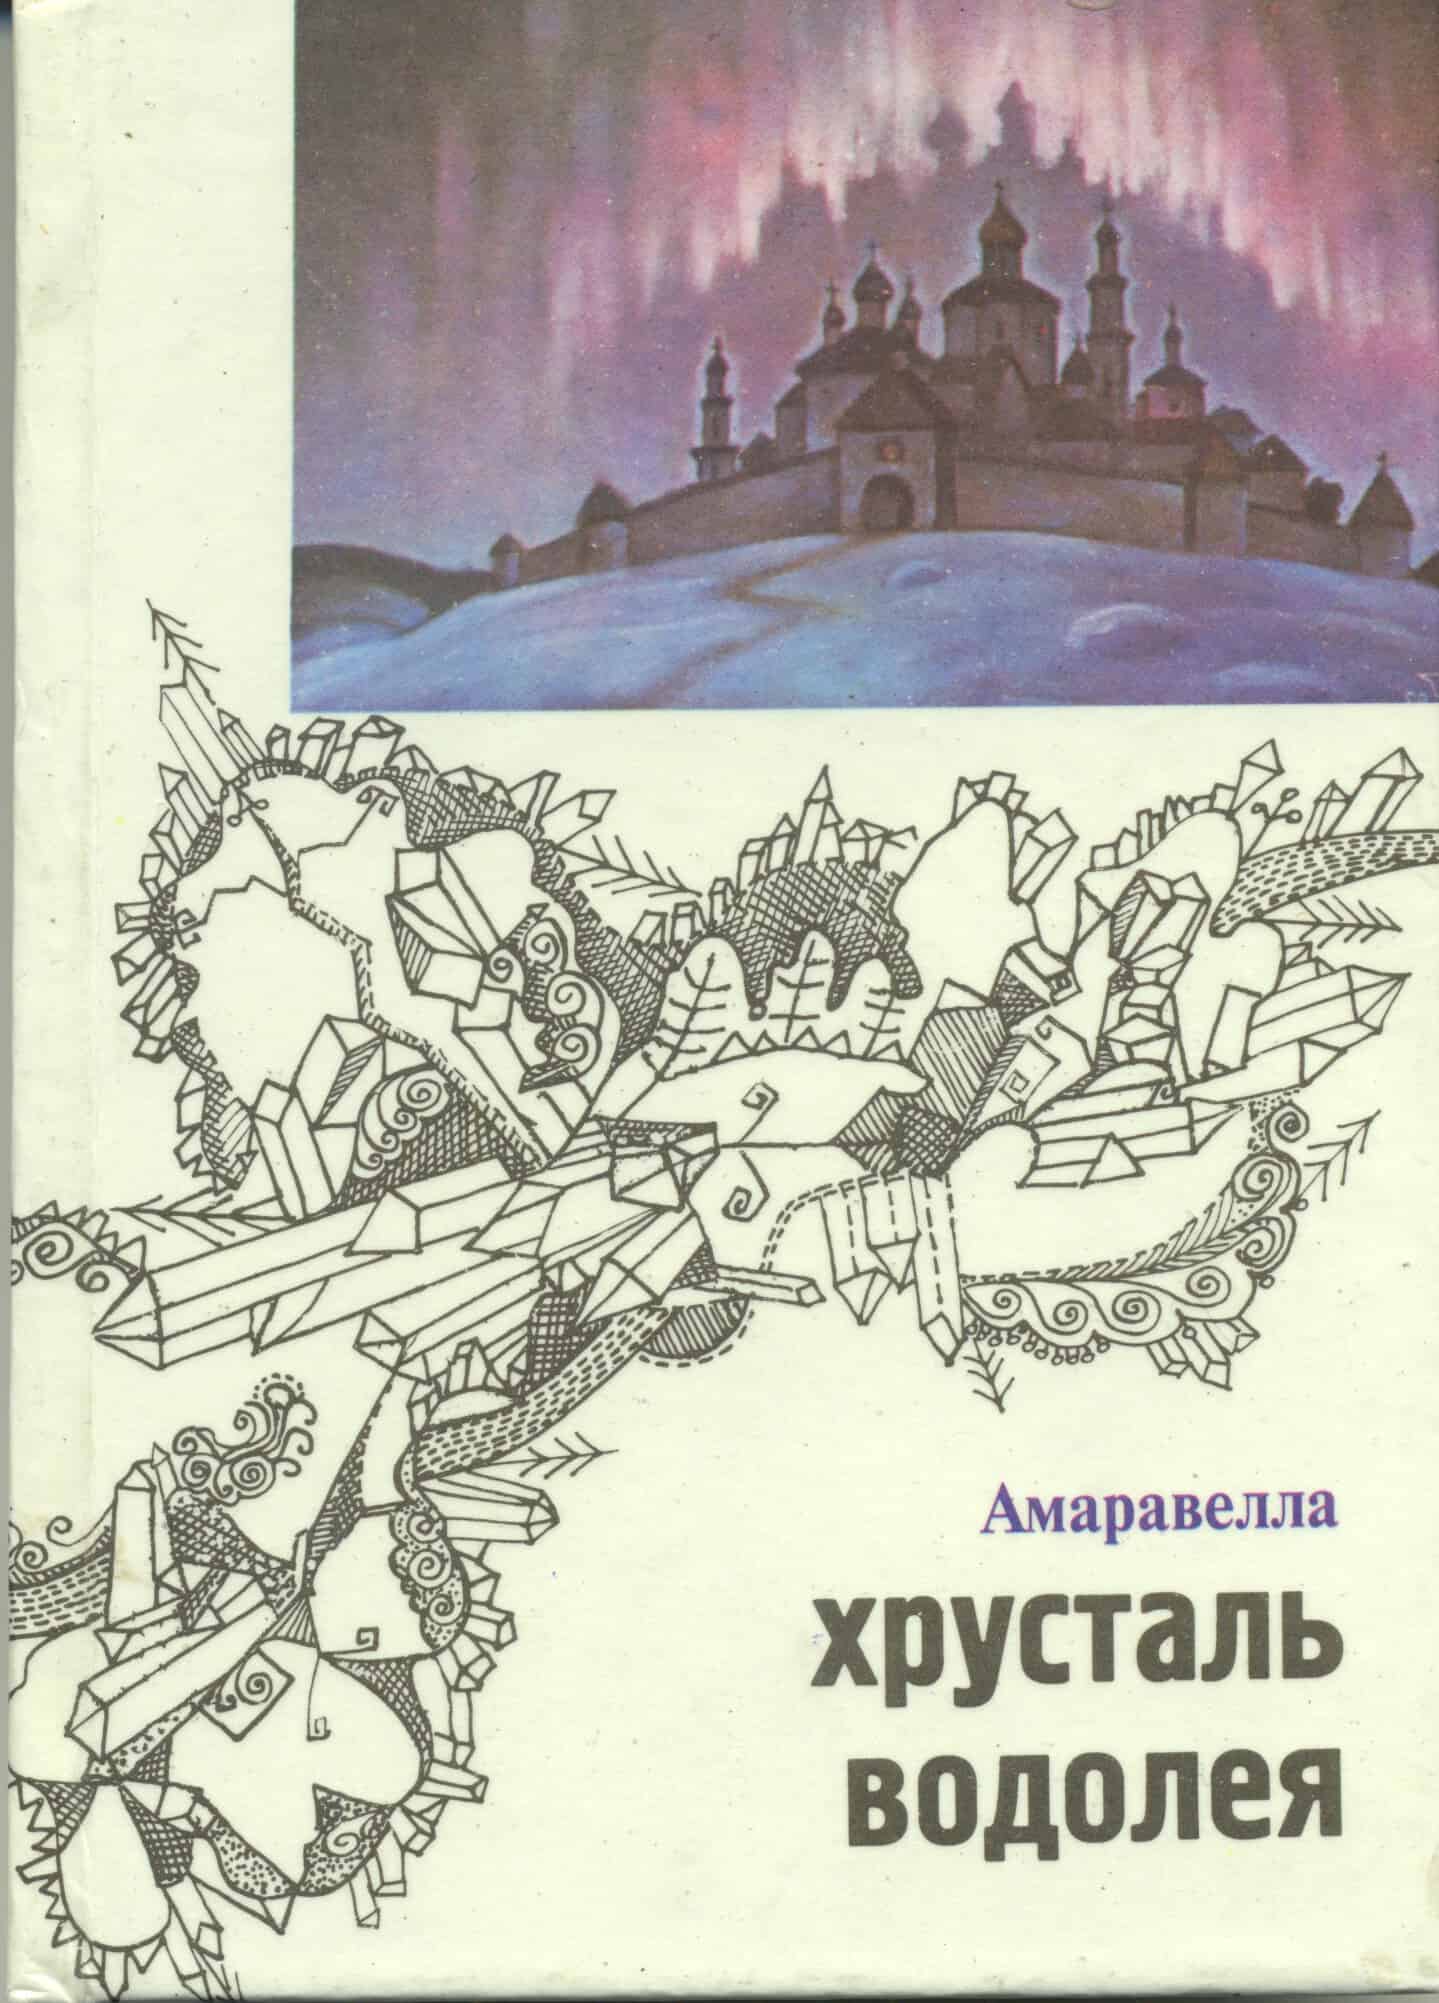 Обложка книги Ю. Линника о Б. Смирнове-Русецком. 1995 год